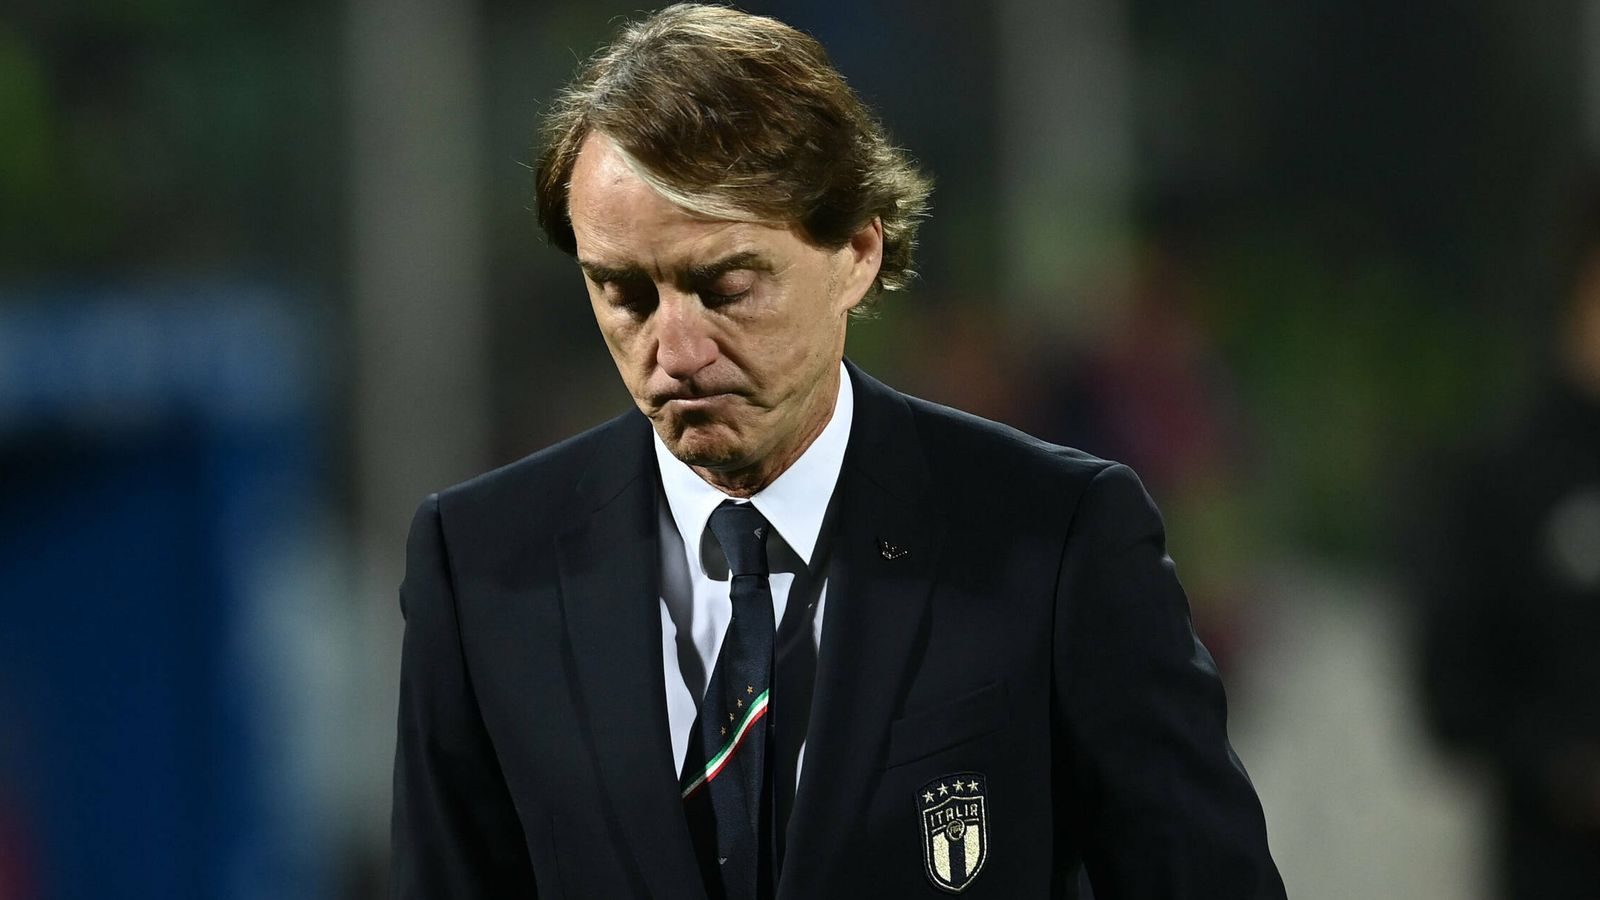 Notizie di calcio: l’Italia piange dopo i Mondiali |  notizie di calcio